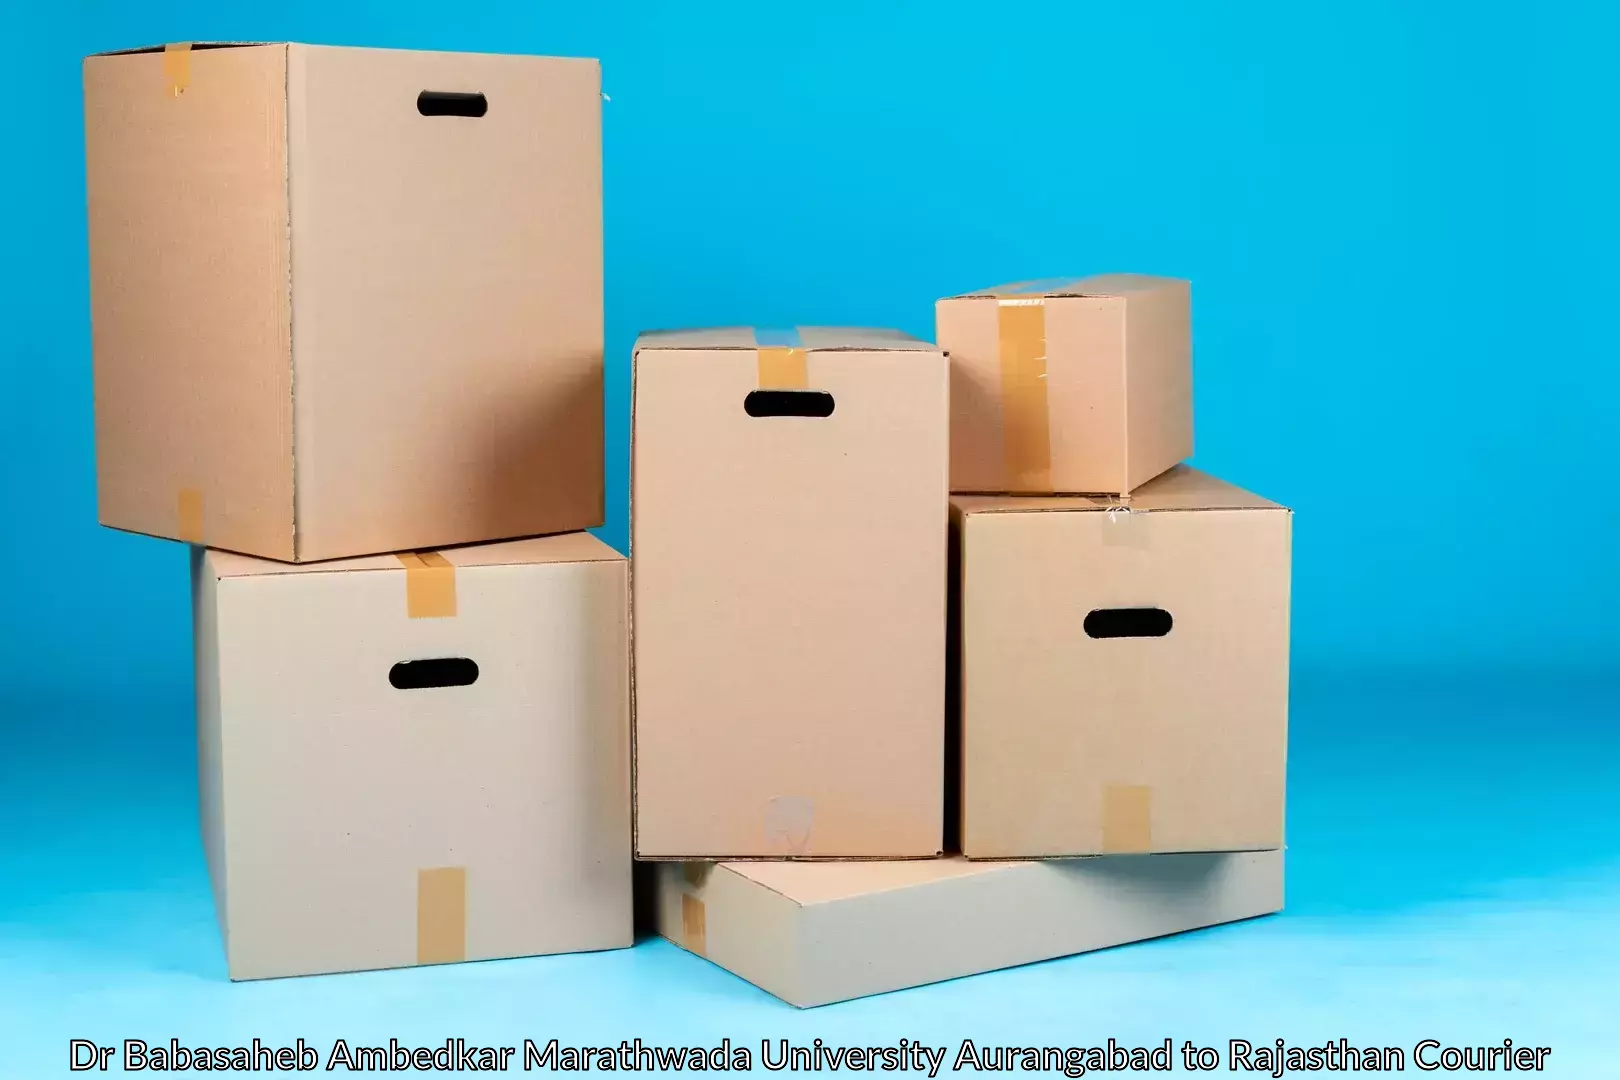 Personalized moving and storage in Dr Babasaheb Ambedkar Marathwada University Aurangabad to Banasthali Vidyapith